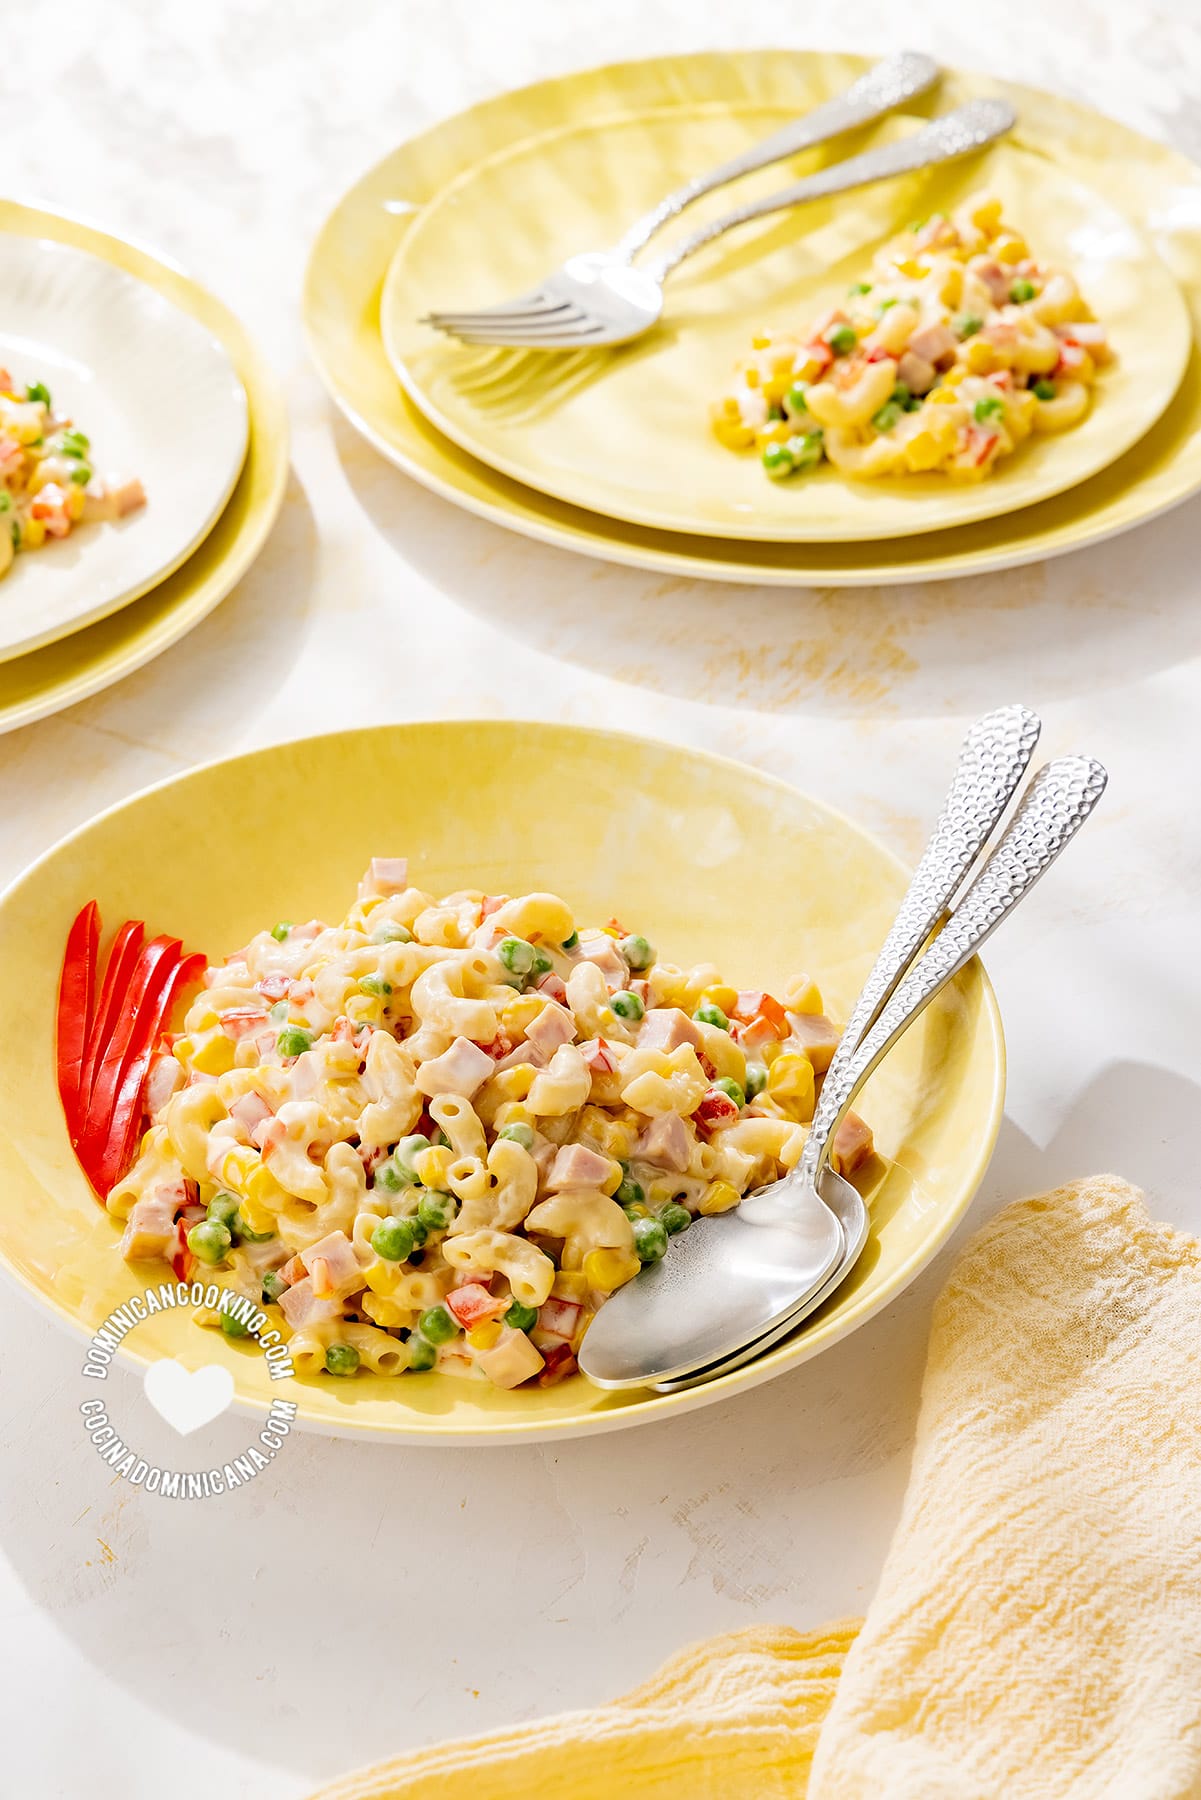 Plates with Ensalada de Coditos (Elbow Pasta Salad)